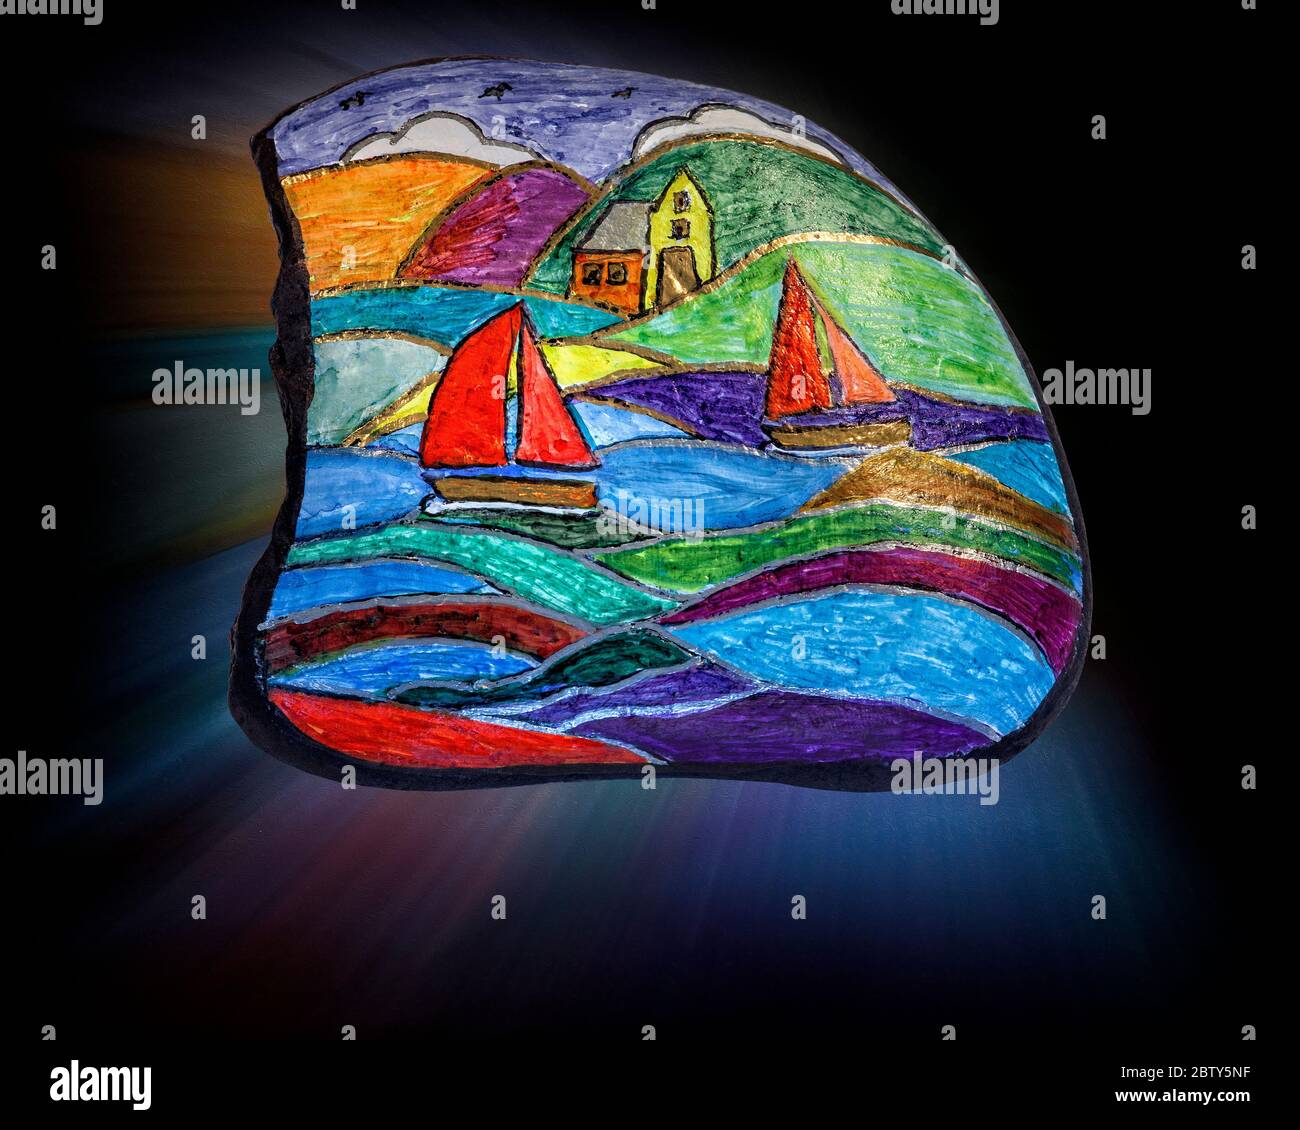 ZEITGENÖSSISCHE KUNST: Plain Sailing (Pebble Art von Ruth Nagele, Größe 7cm x 8cm) Stockfoto